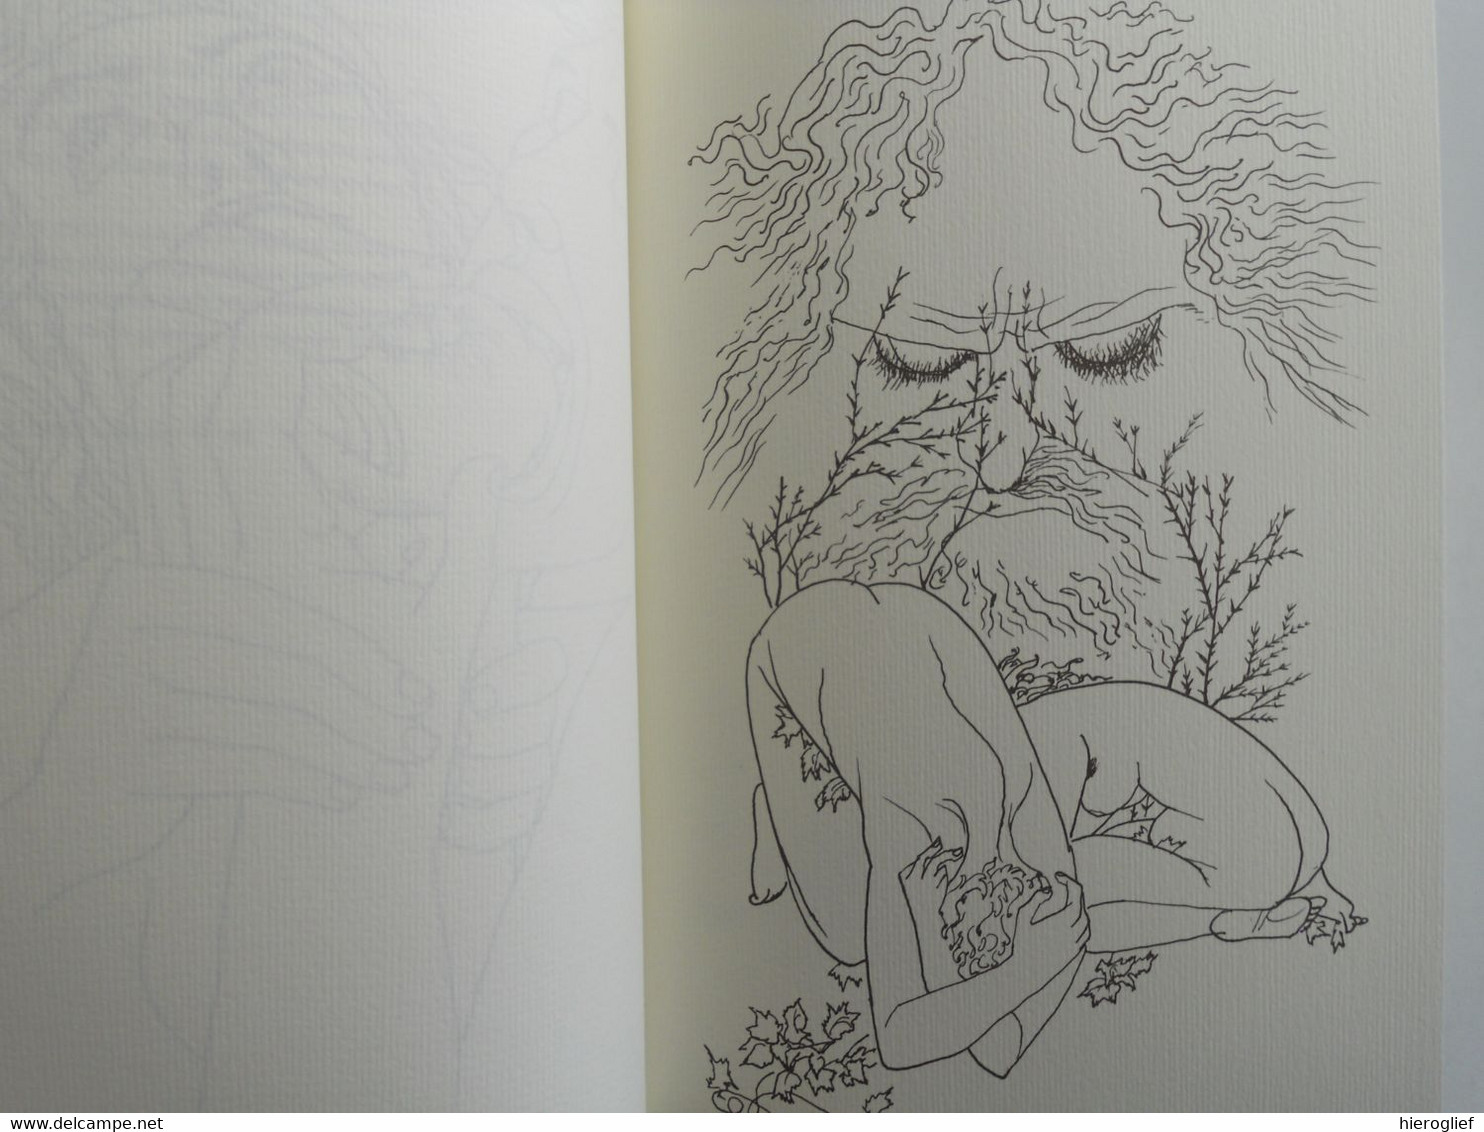 EPPO DOEVE - VAN ADAM TOT NOACH - tekeningen aangevuld met een bloemlezing genesis poëzie uit de 20ste eeuw